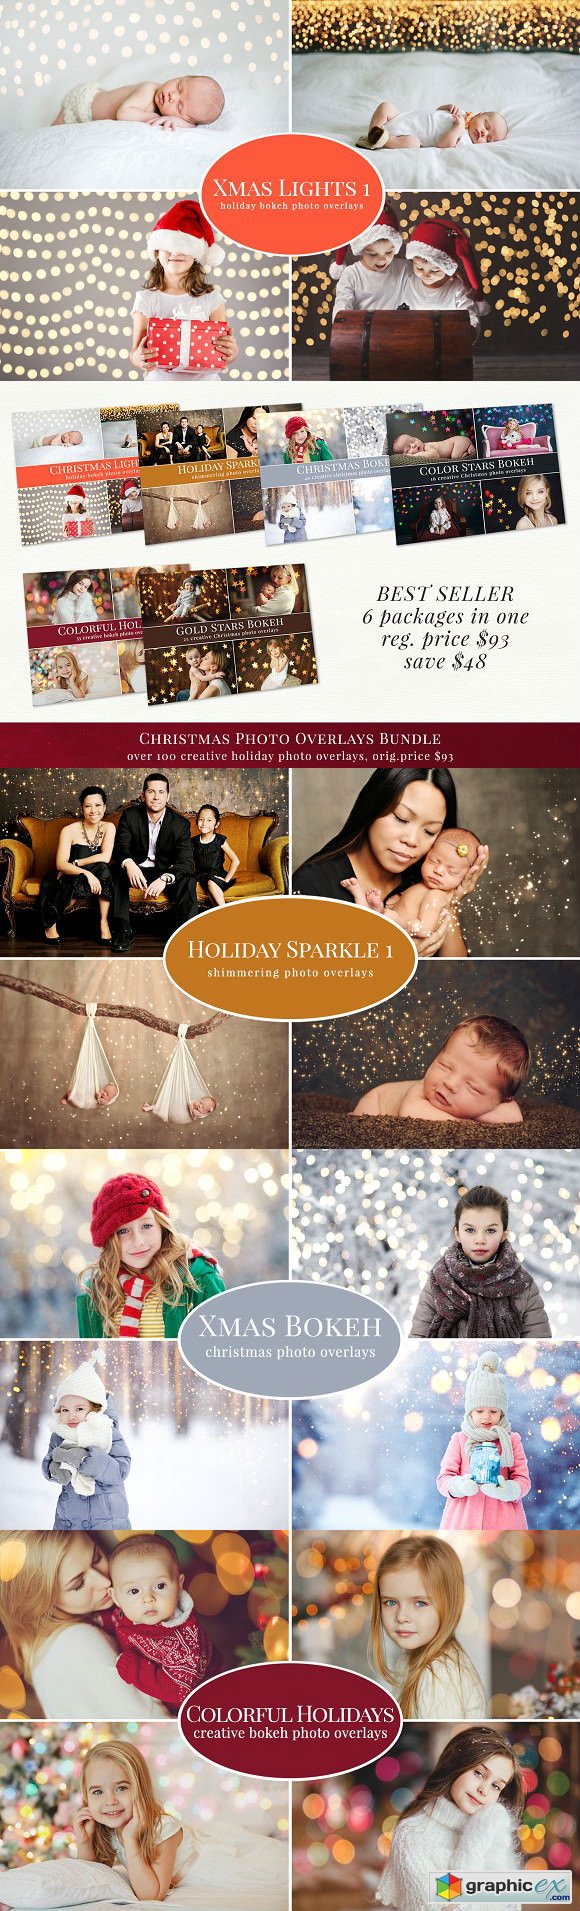 Christmas photo overlays - bundle